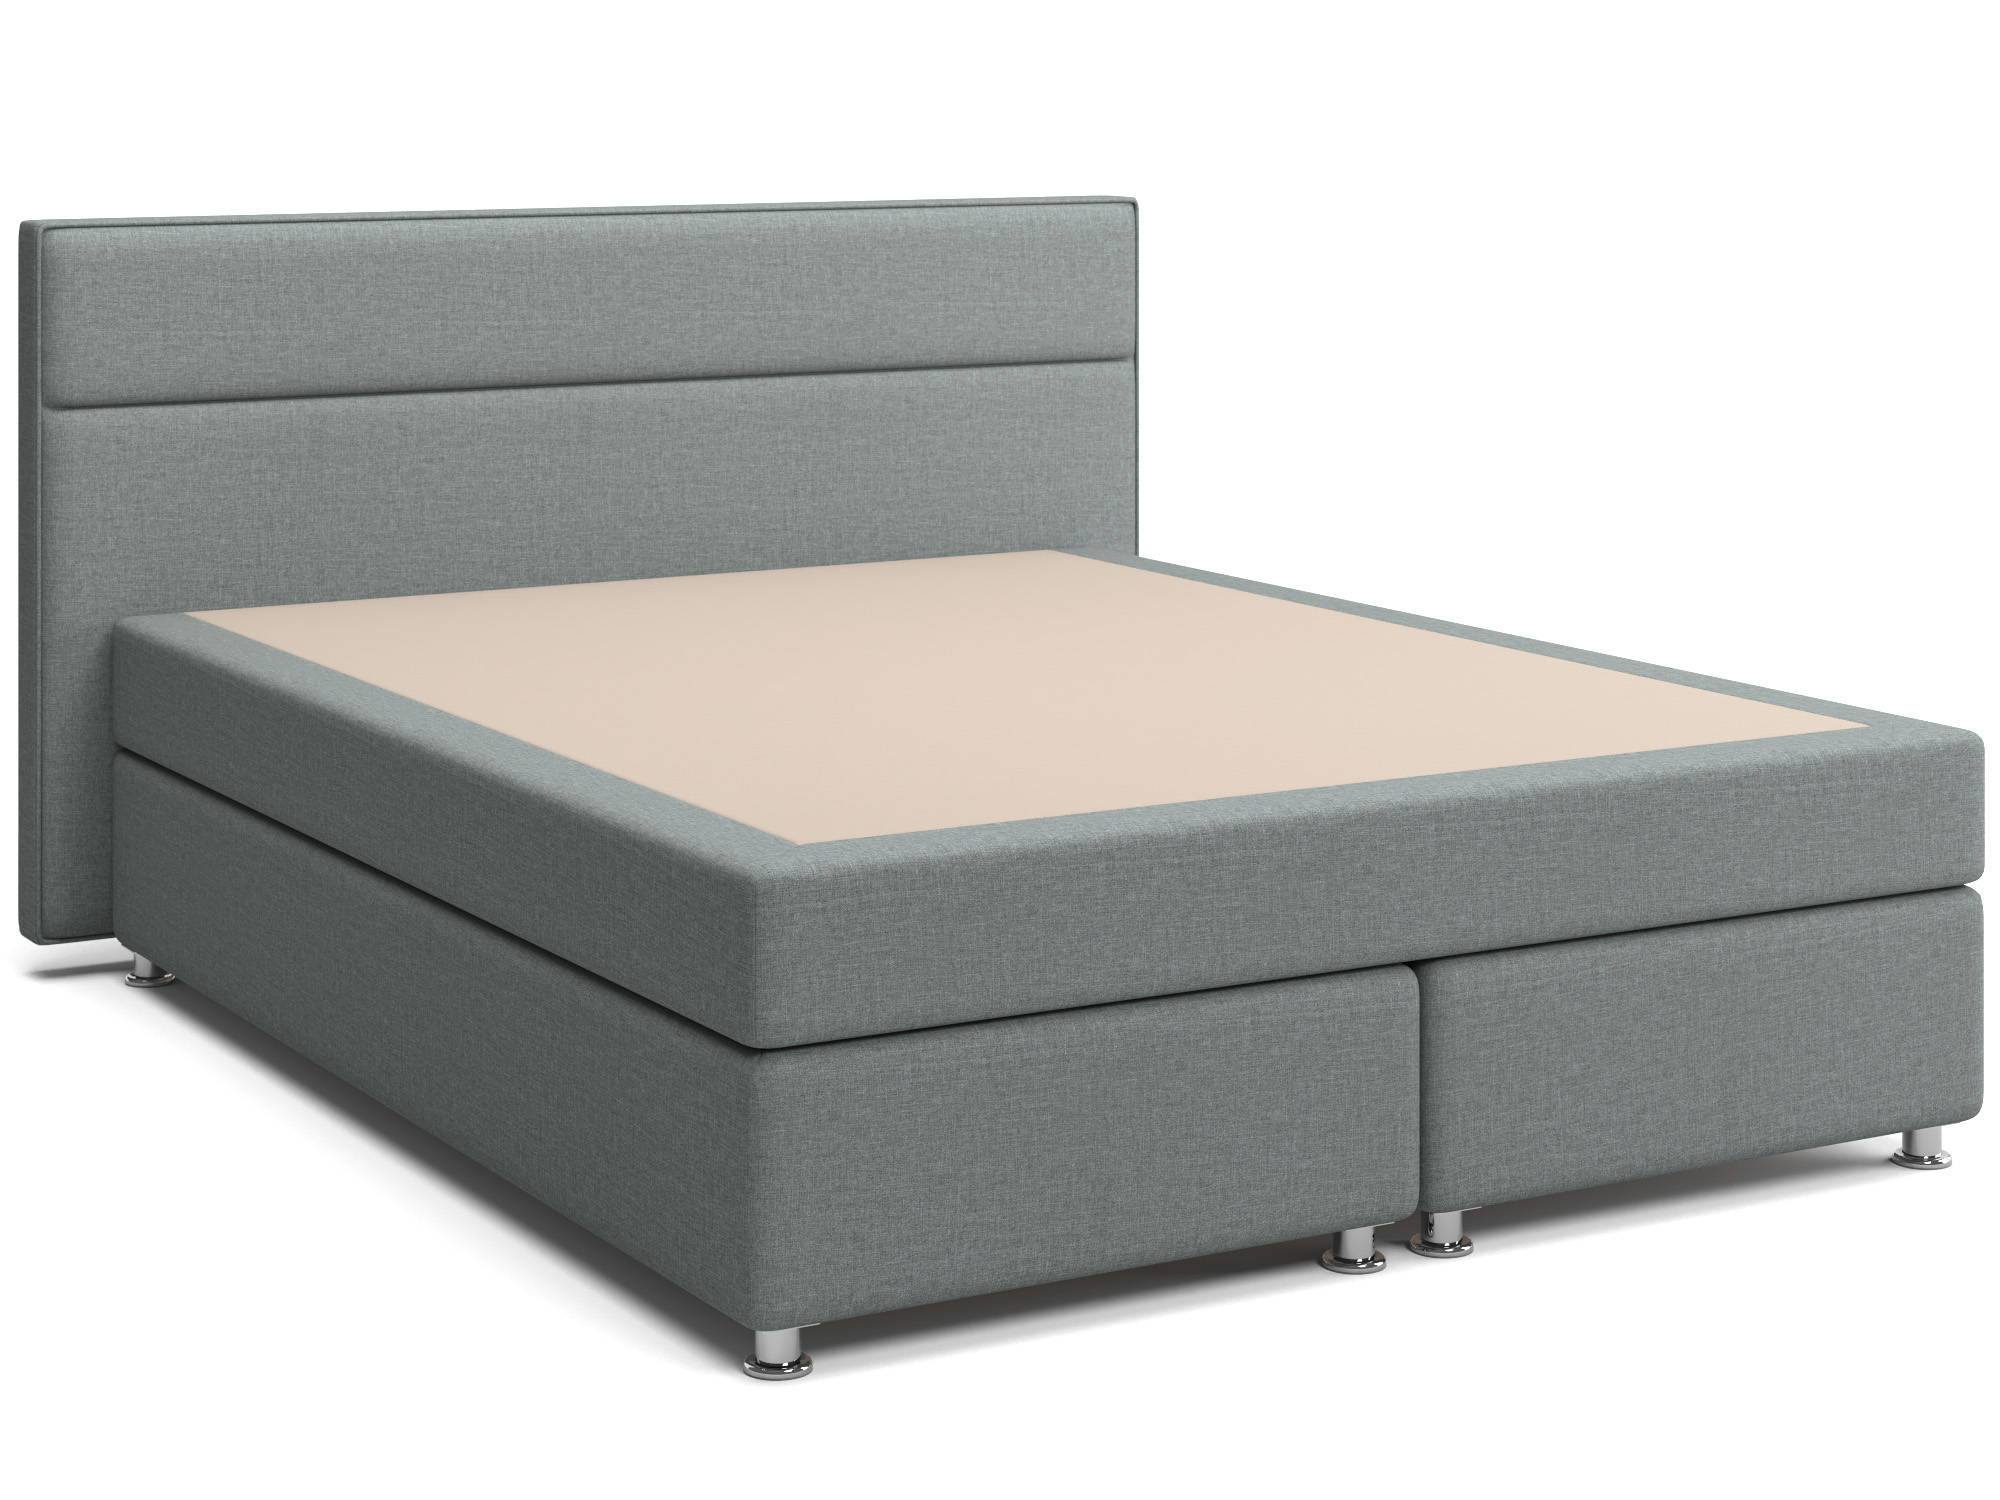 Кровать с матрасом и зависимым пружинным блоком Марта (160х200) Box Spring ДСП, ДВП idealbeds мягкая кровать modena box